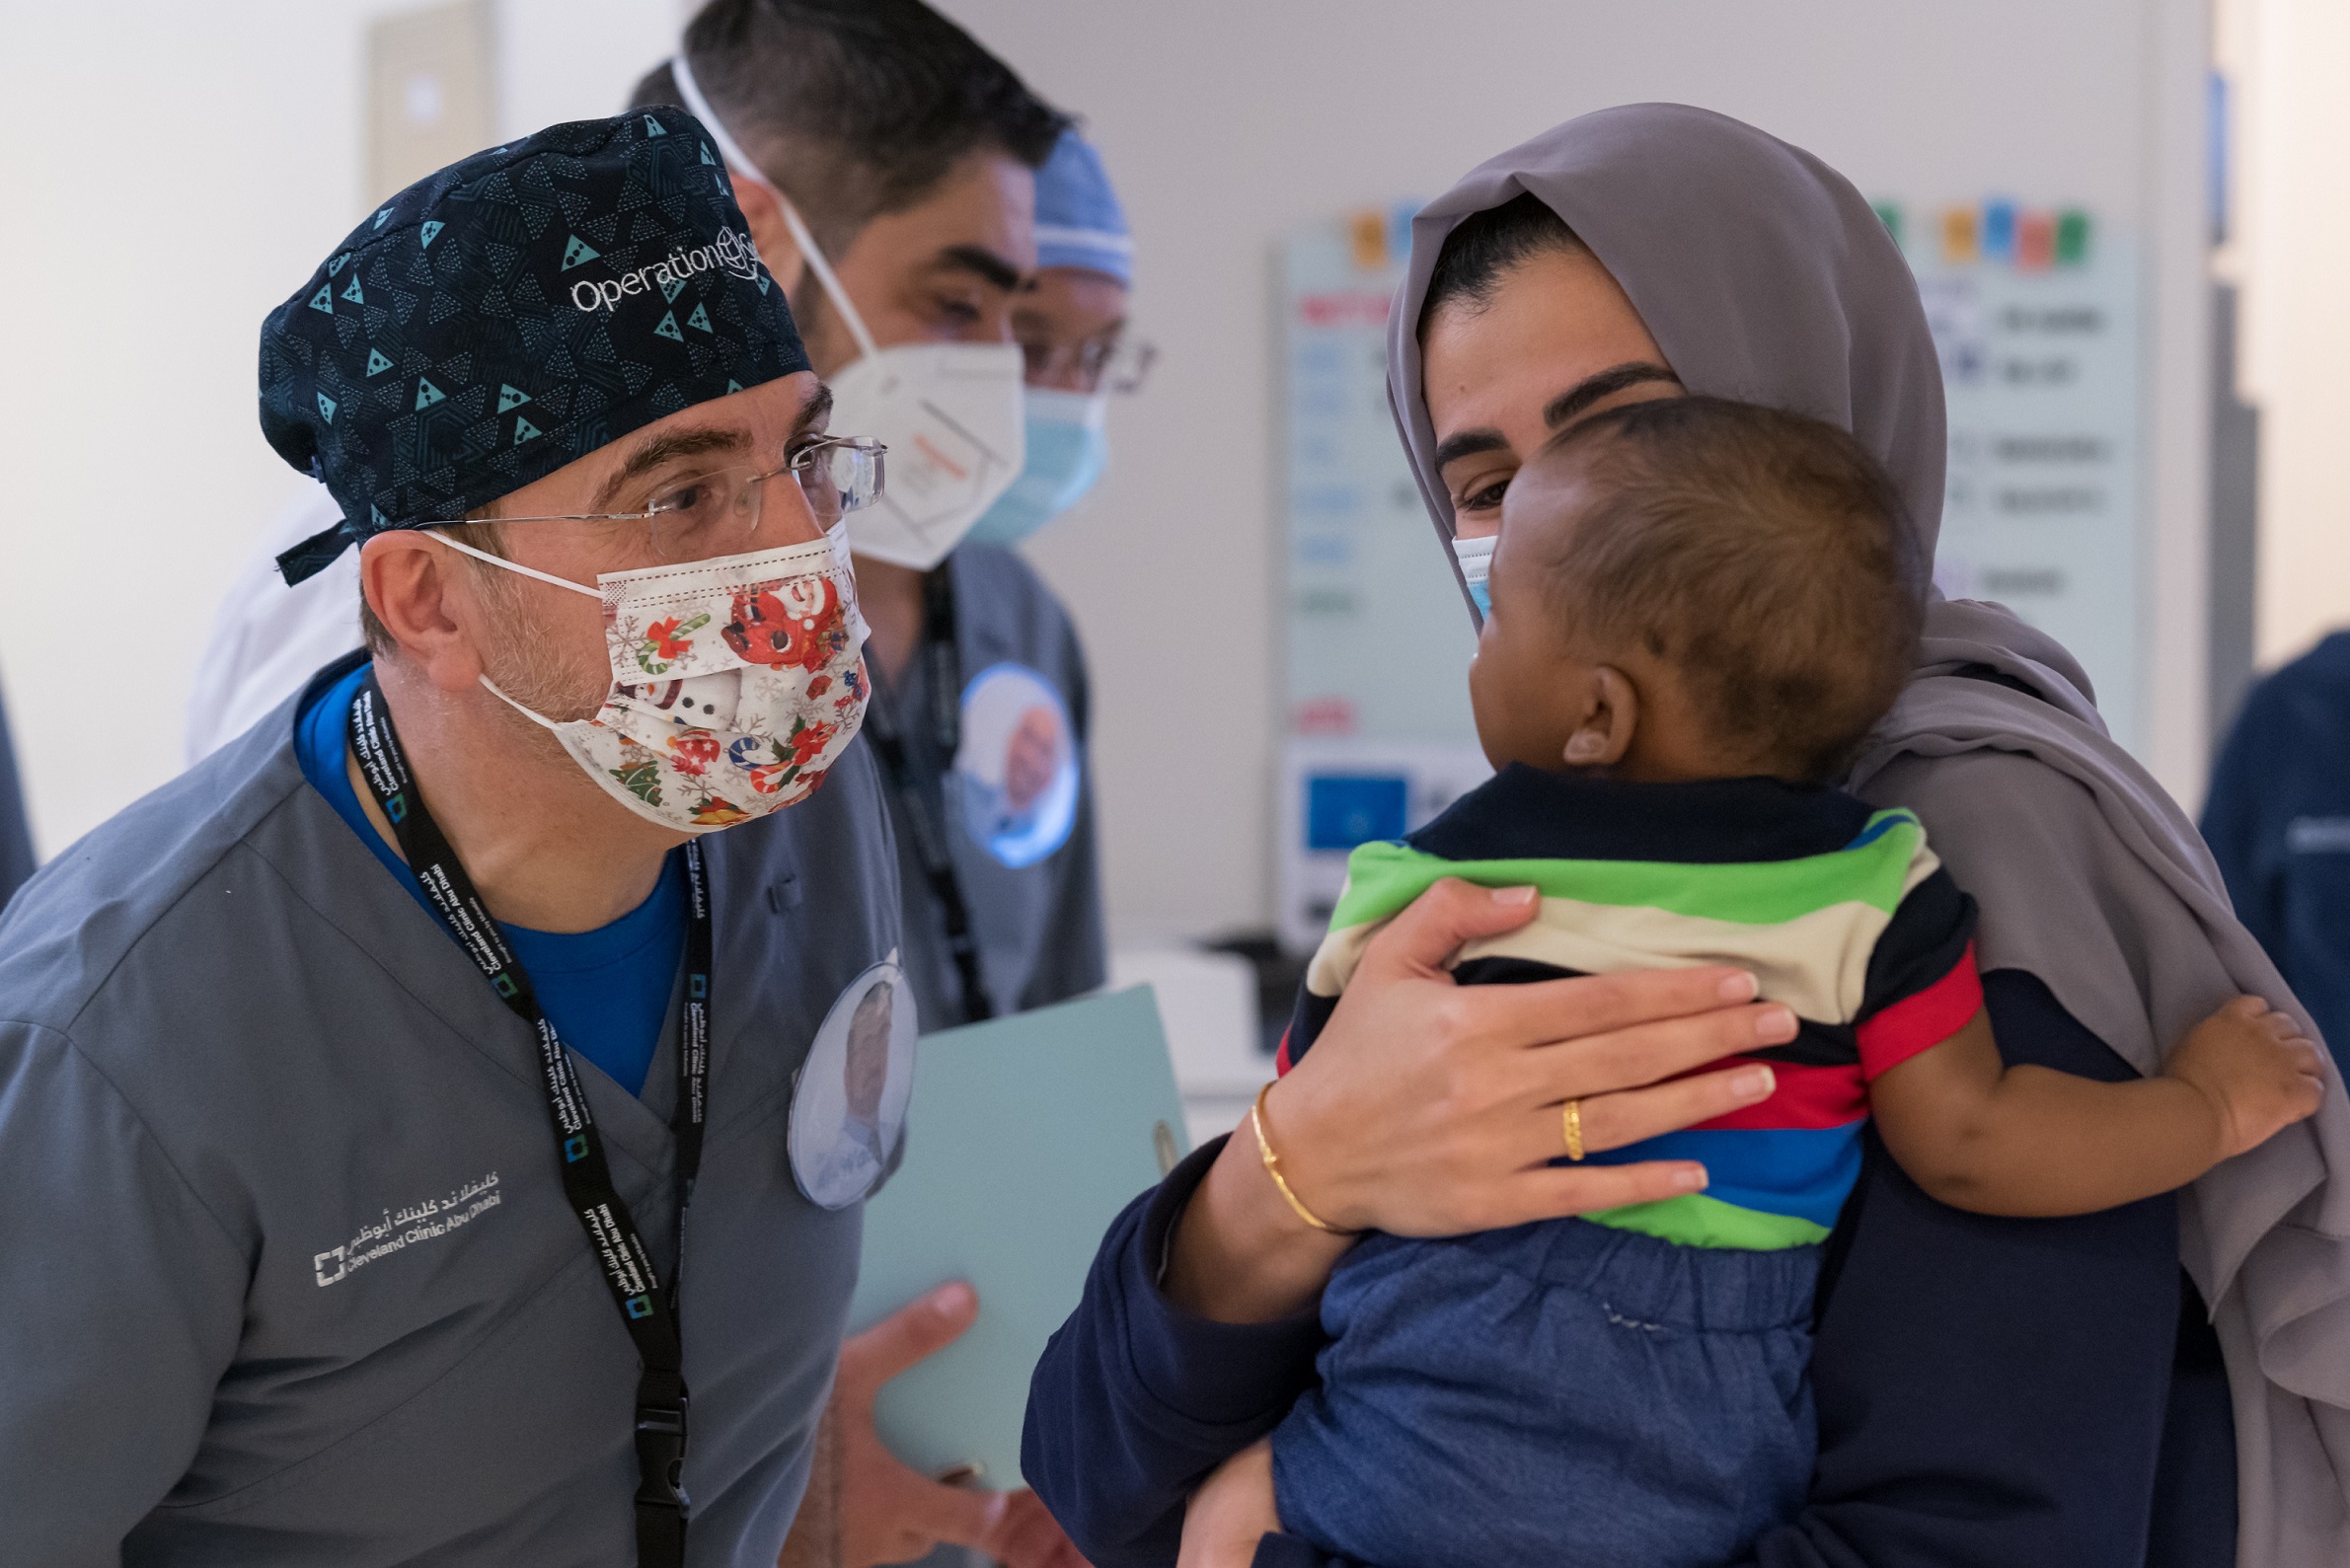 “مستشفى كليفلاند كلينك أبوظبي ومؤسسة عملية الابتسامة الإماراتية يقدمان إجراءات جراحية علاجية للمصابين بمشاكل خلقية في الوجه”